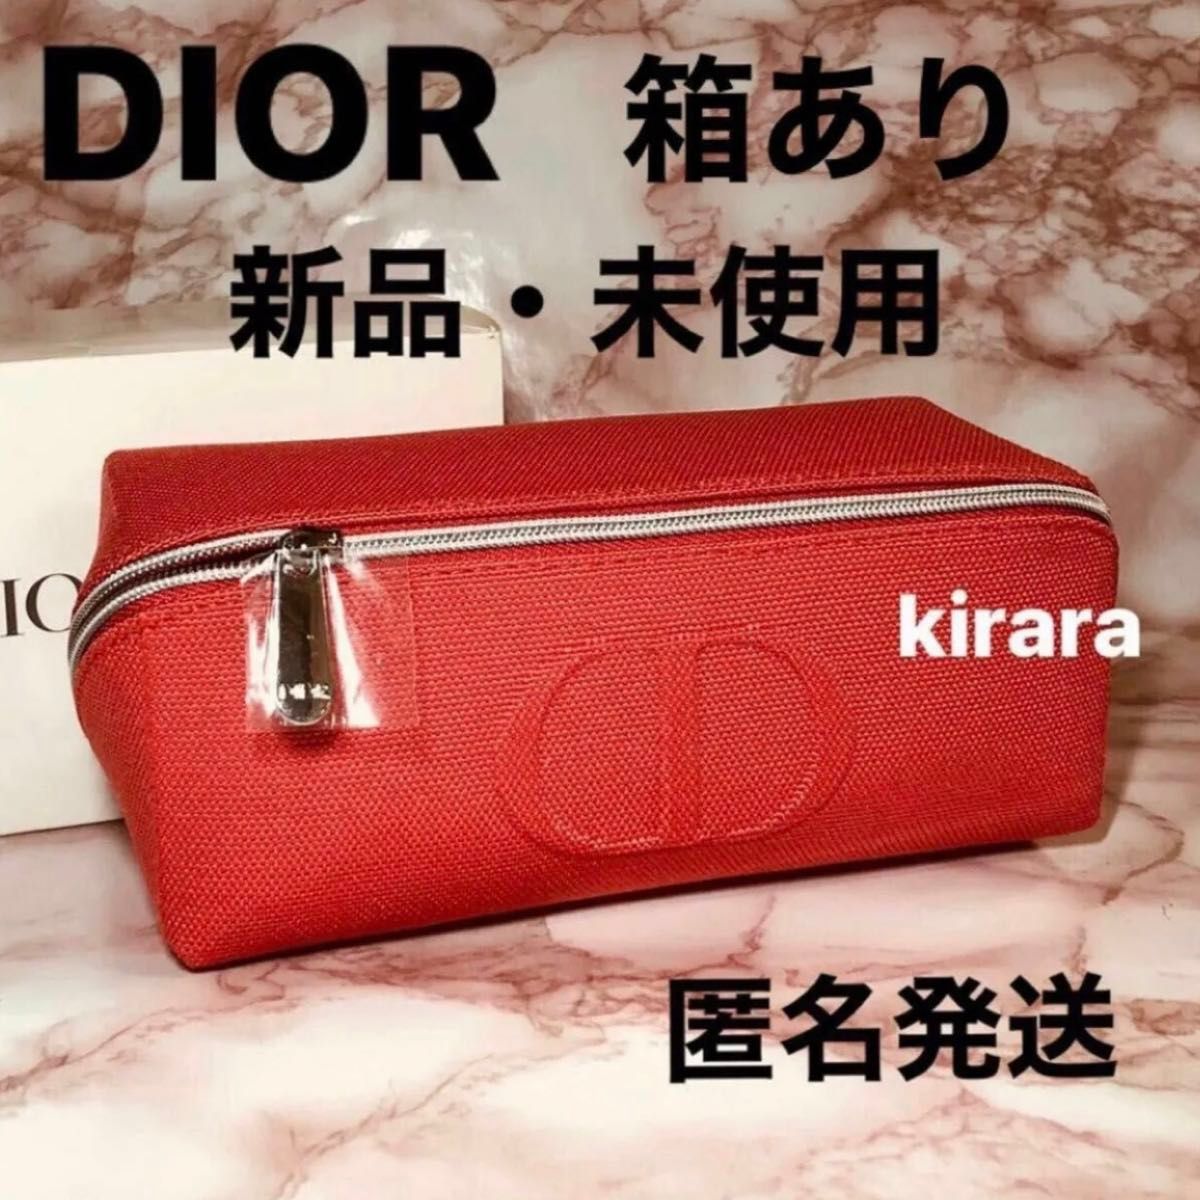 新品・未使用・箱あり】dior ディオール ポーチ ノベルティ 日本